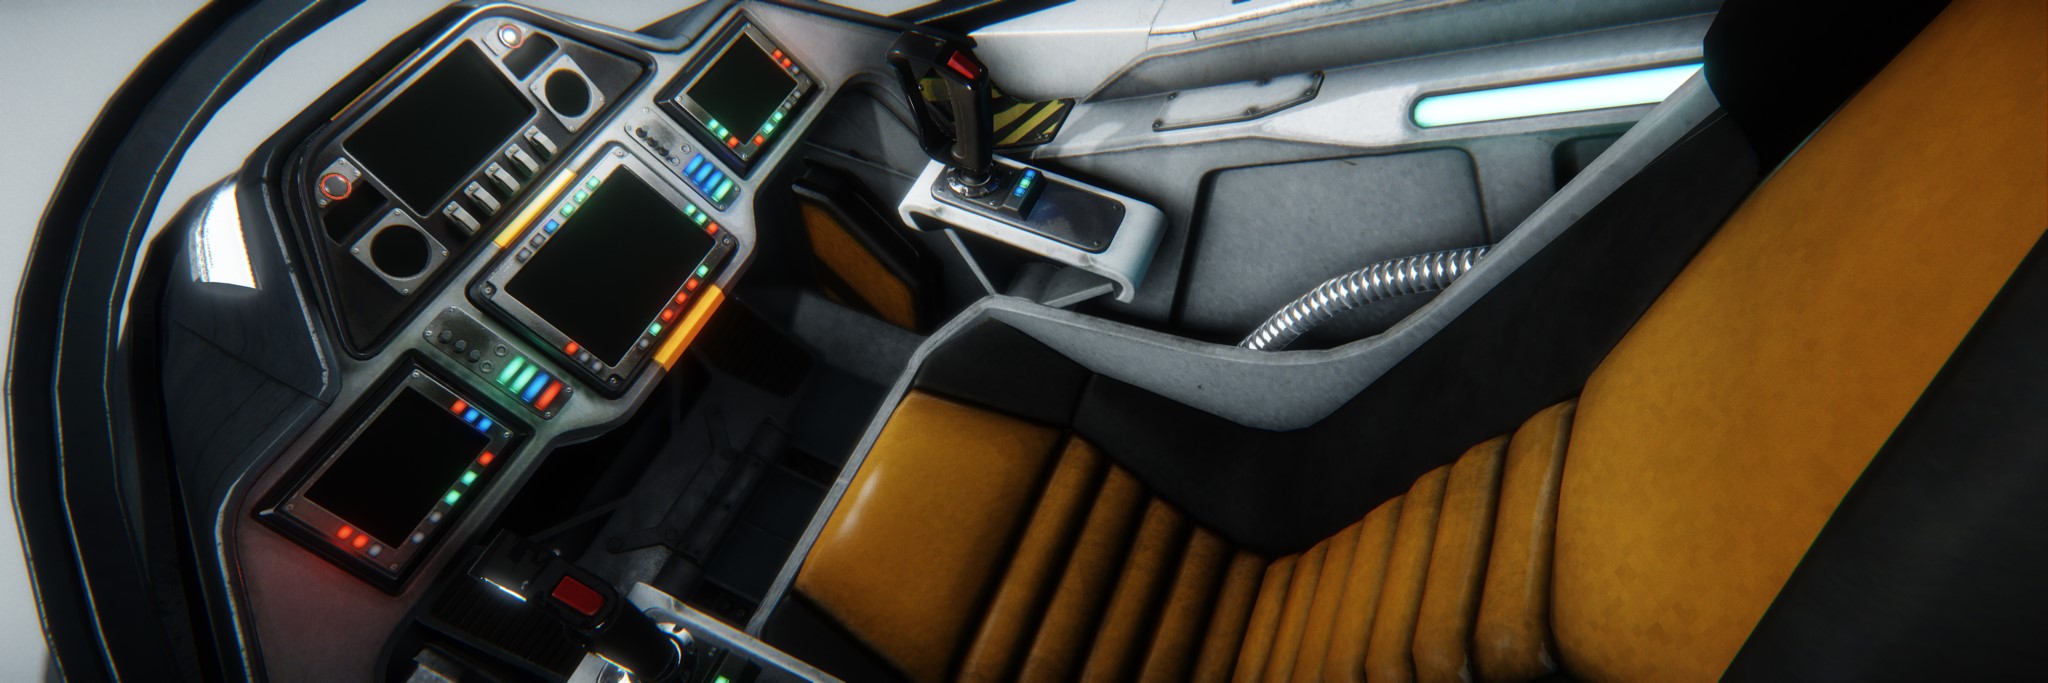 Datei:Avenger cockpit visualjpg.jpg